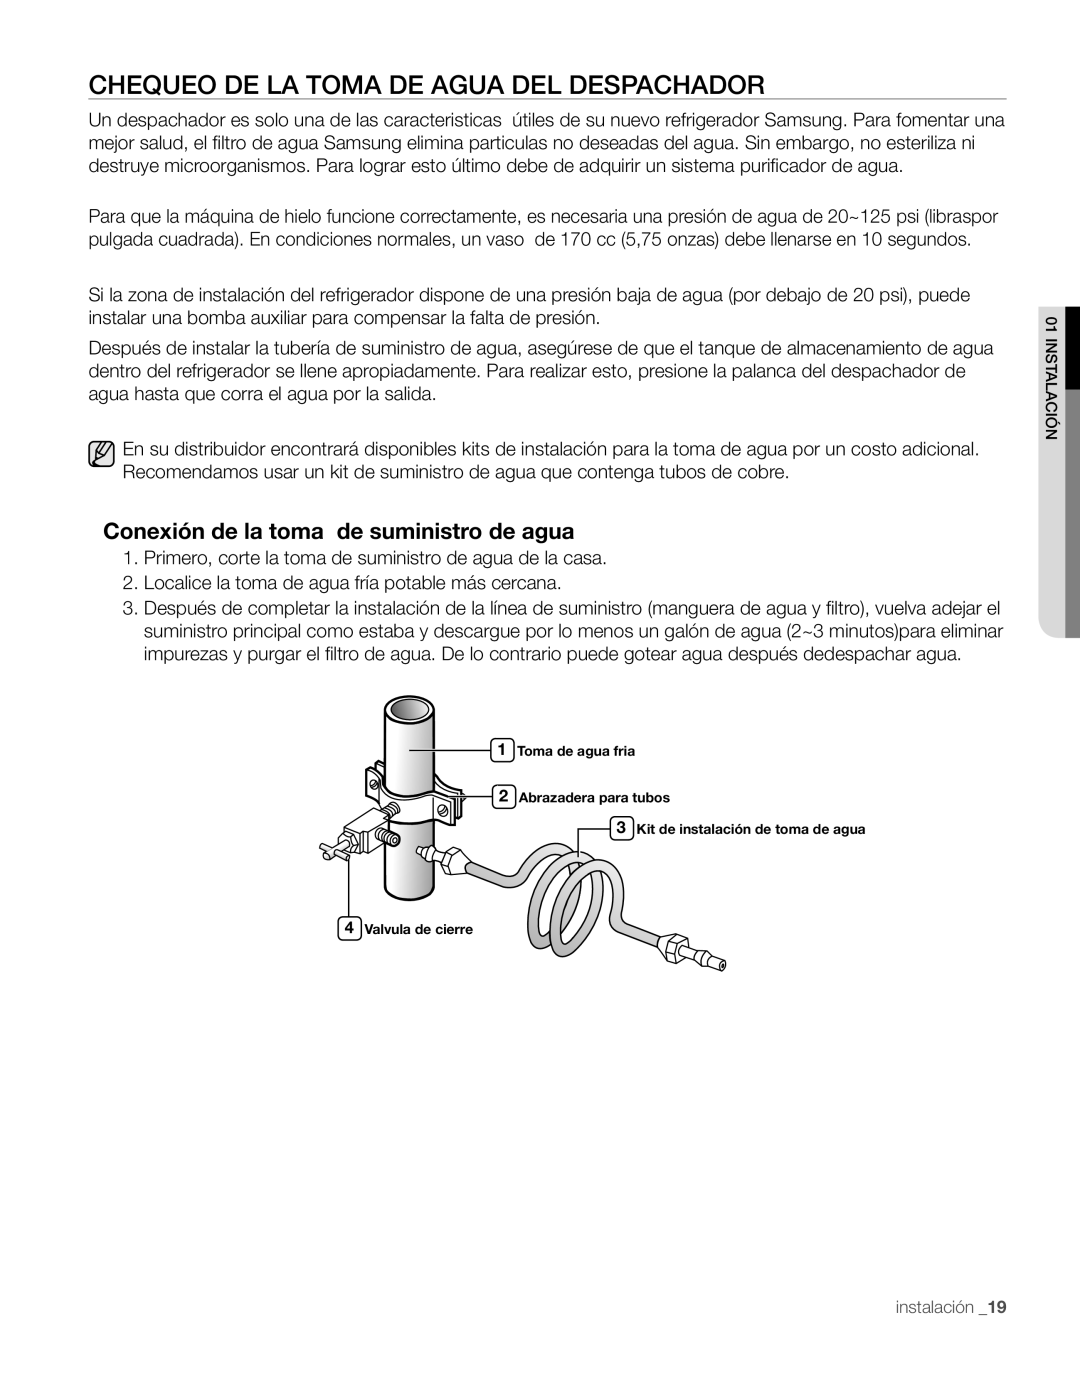 Samsung RS267TDPN user manual Chequeo De La Toma De Agua Del Despachador, Conexión de la toma de suministro de agua 